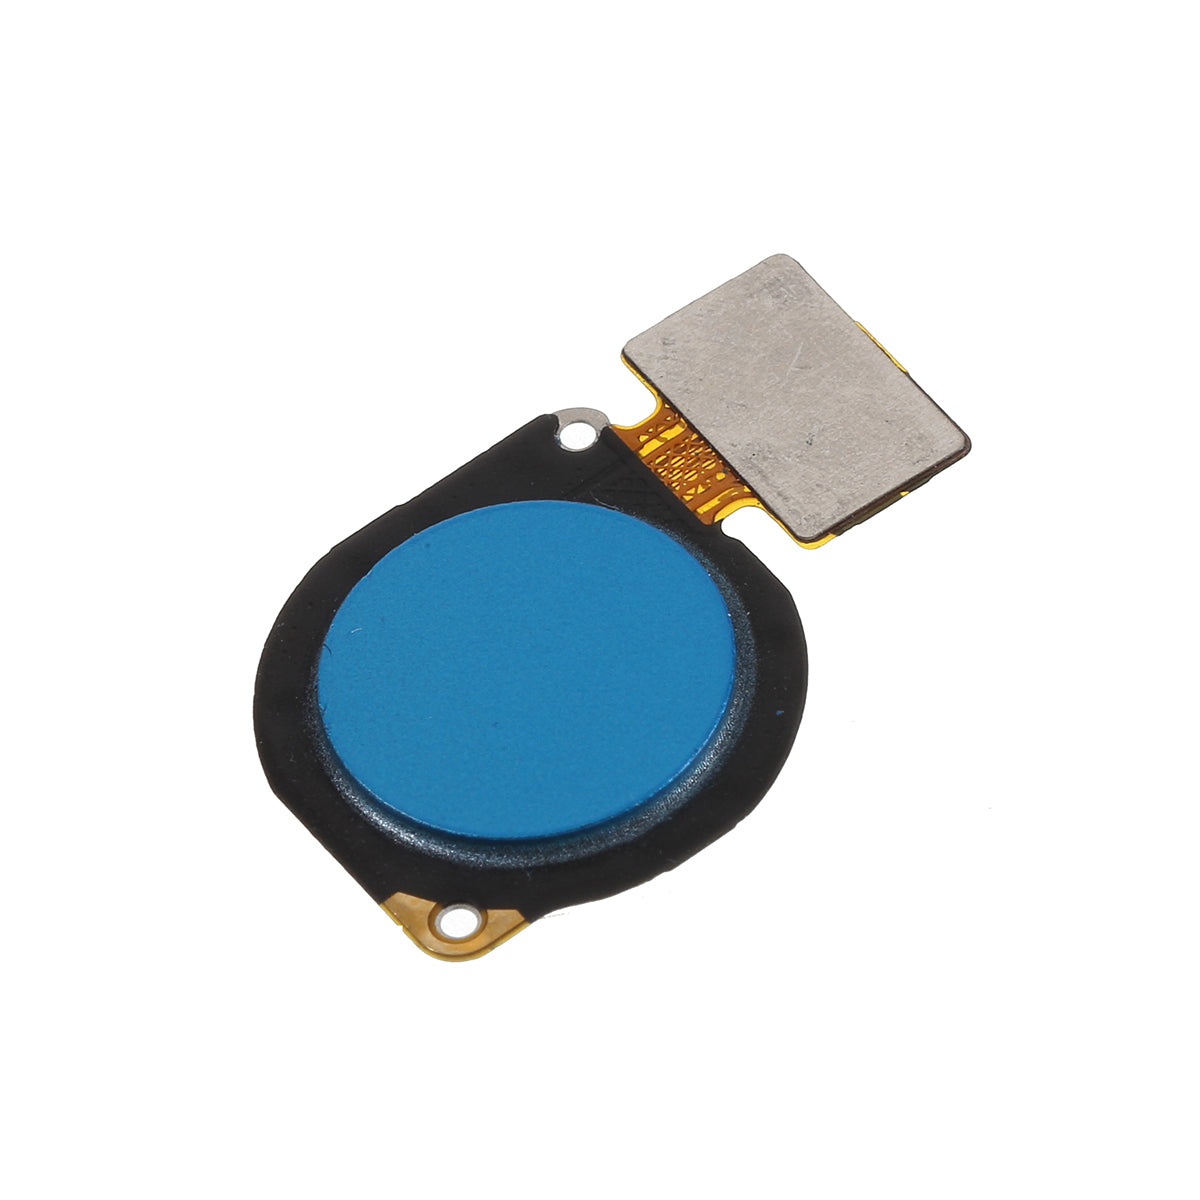 OEM Home Key Fingerprint Button Flex Cable for Huawei P30 Lite - Blue